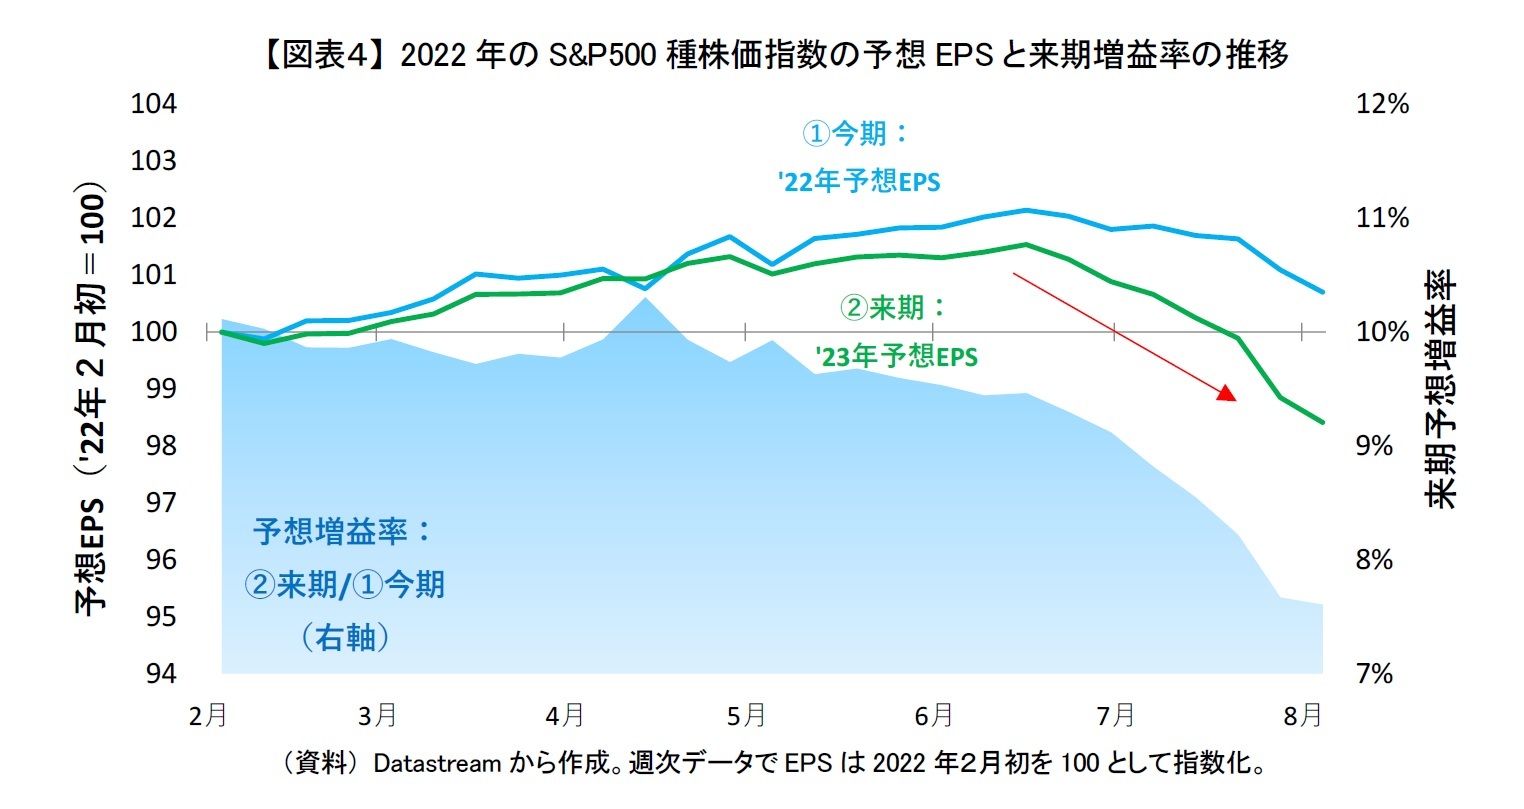 【図表４】 2022年のS&P500種株価指数の予想EPSと来期増益率の推移